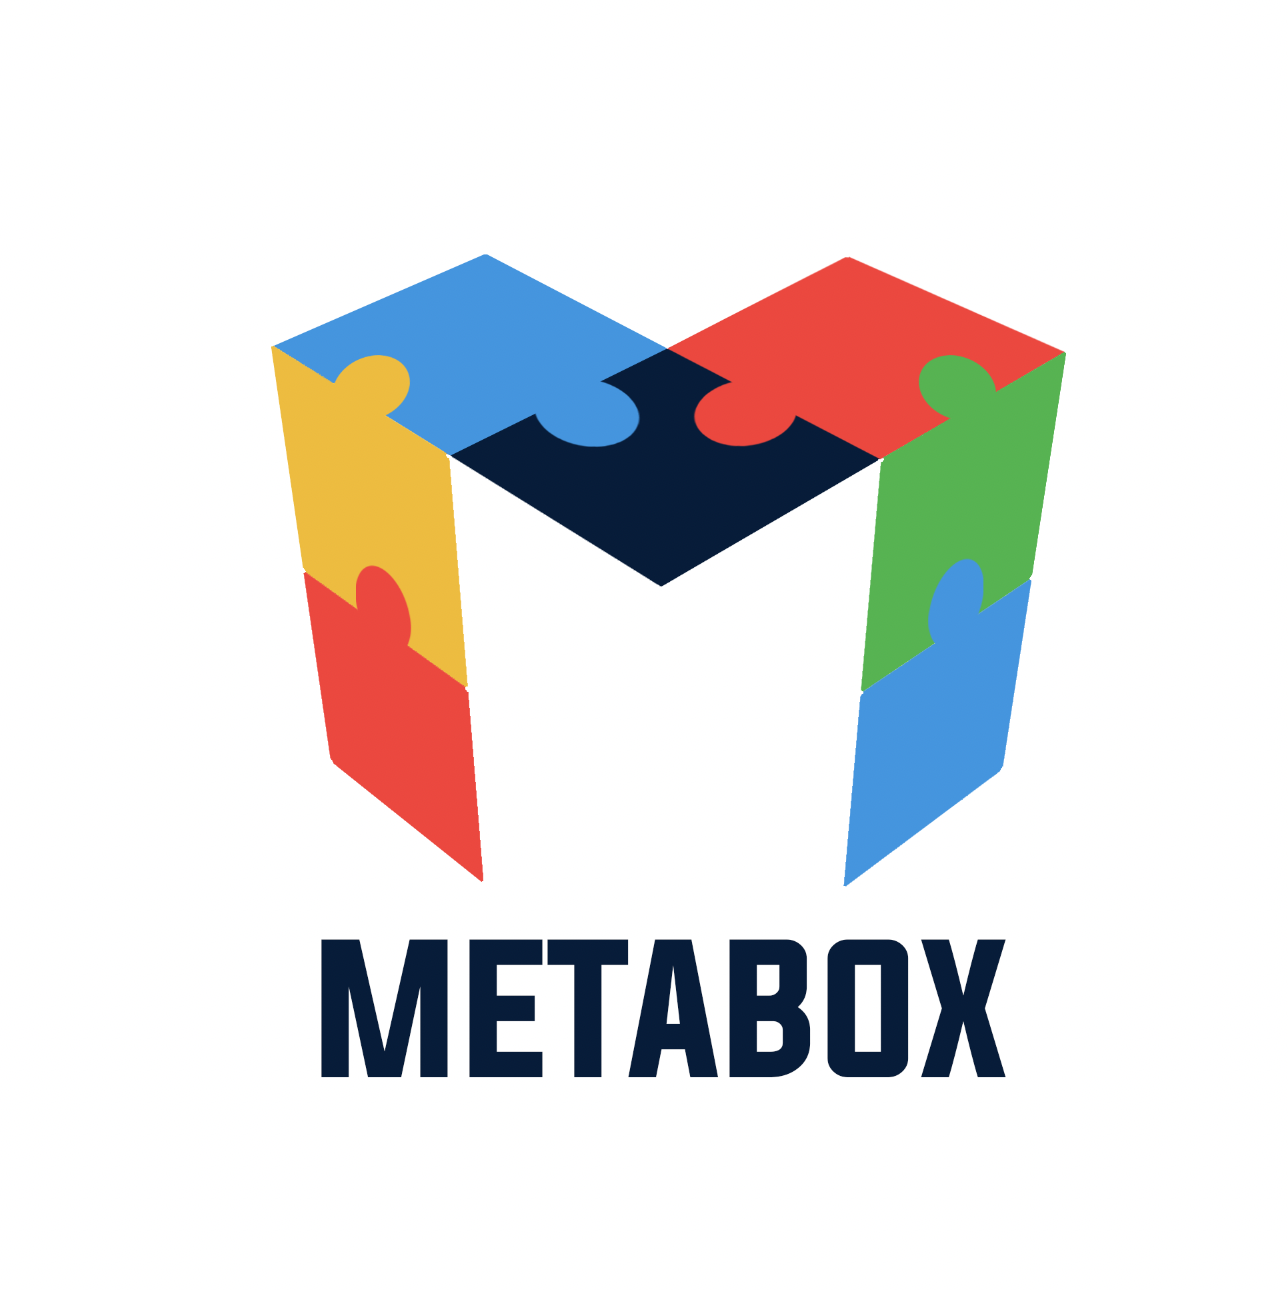 metabox.DK